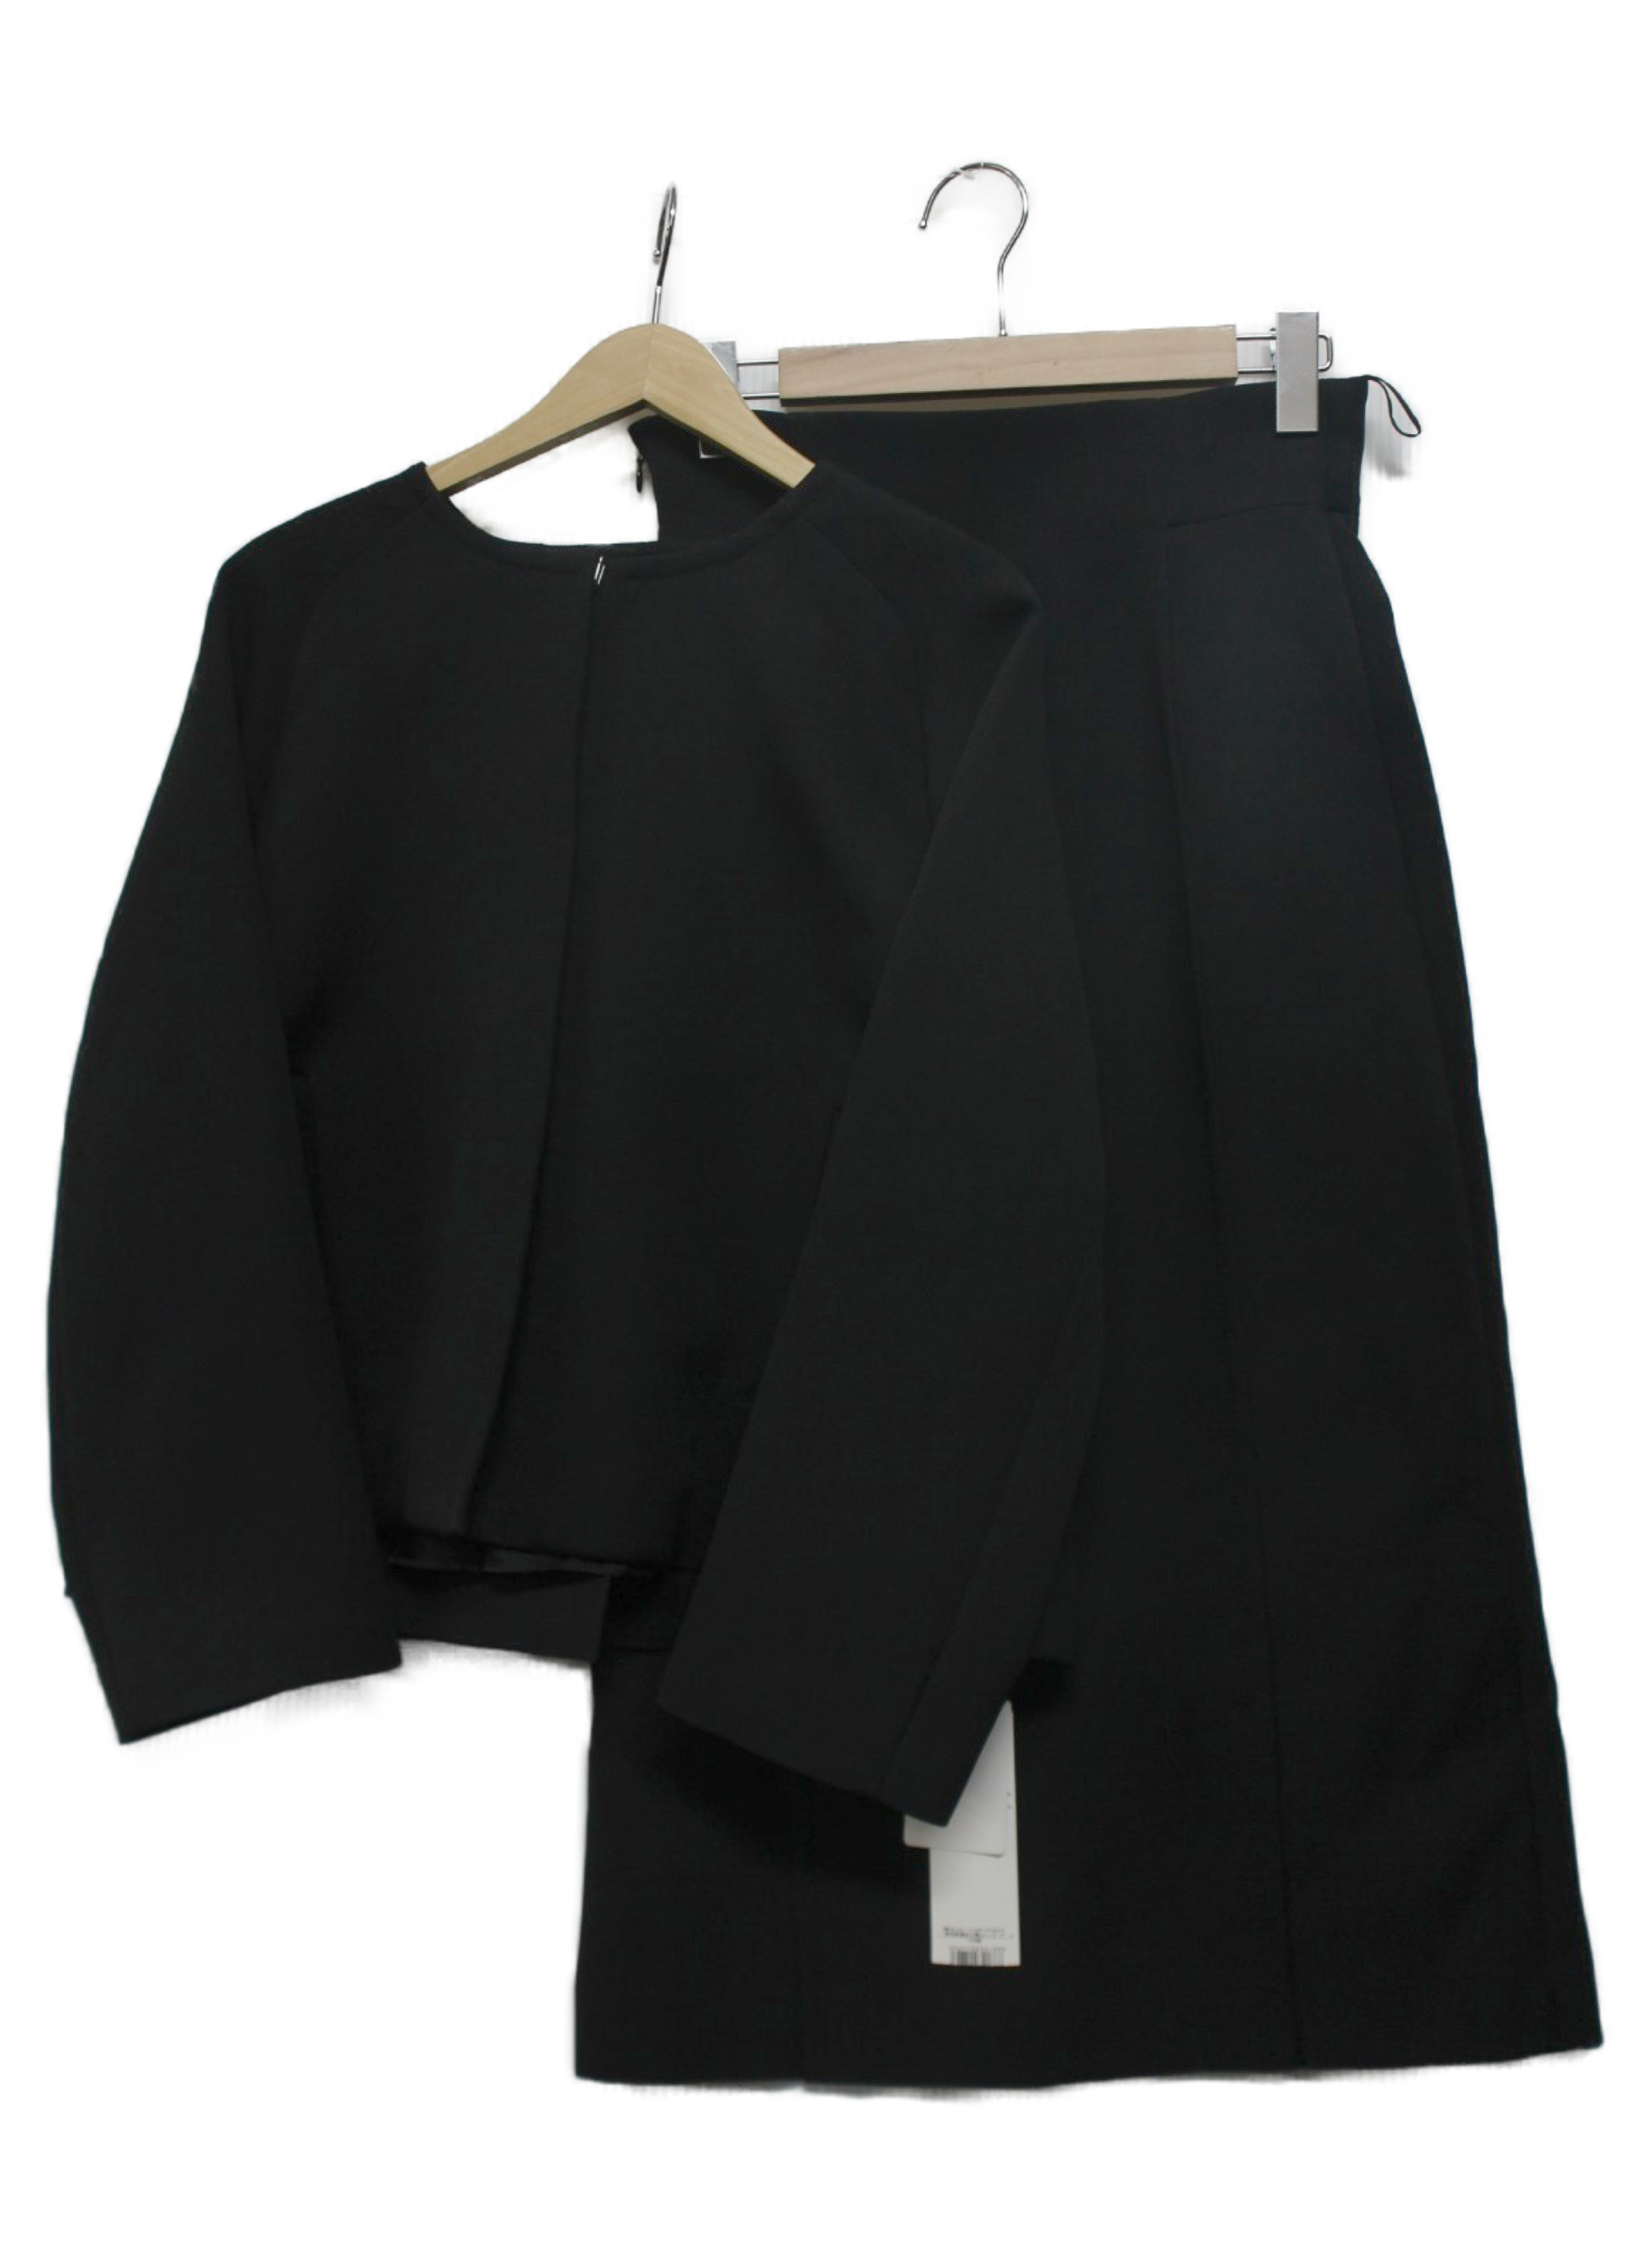 ADORE (アドーア) トリプルクロススカートスーツ ブラック サイズ:38 未使用品